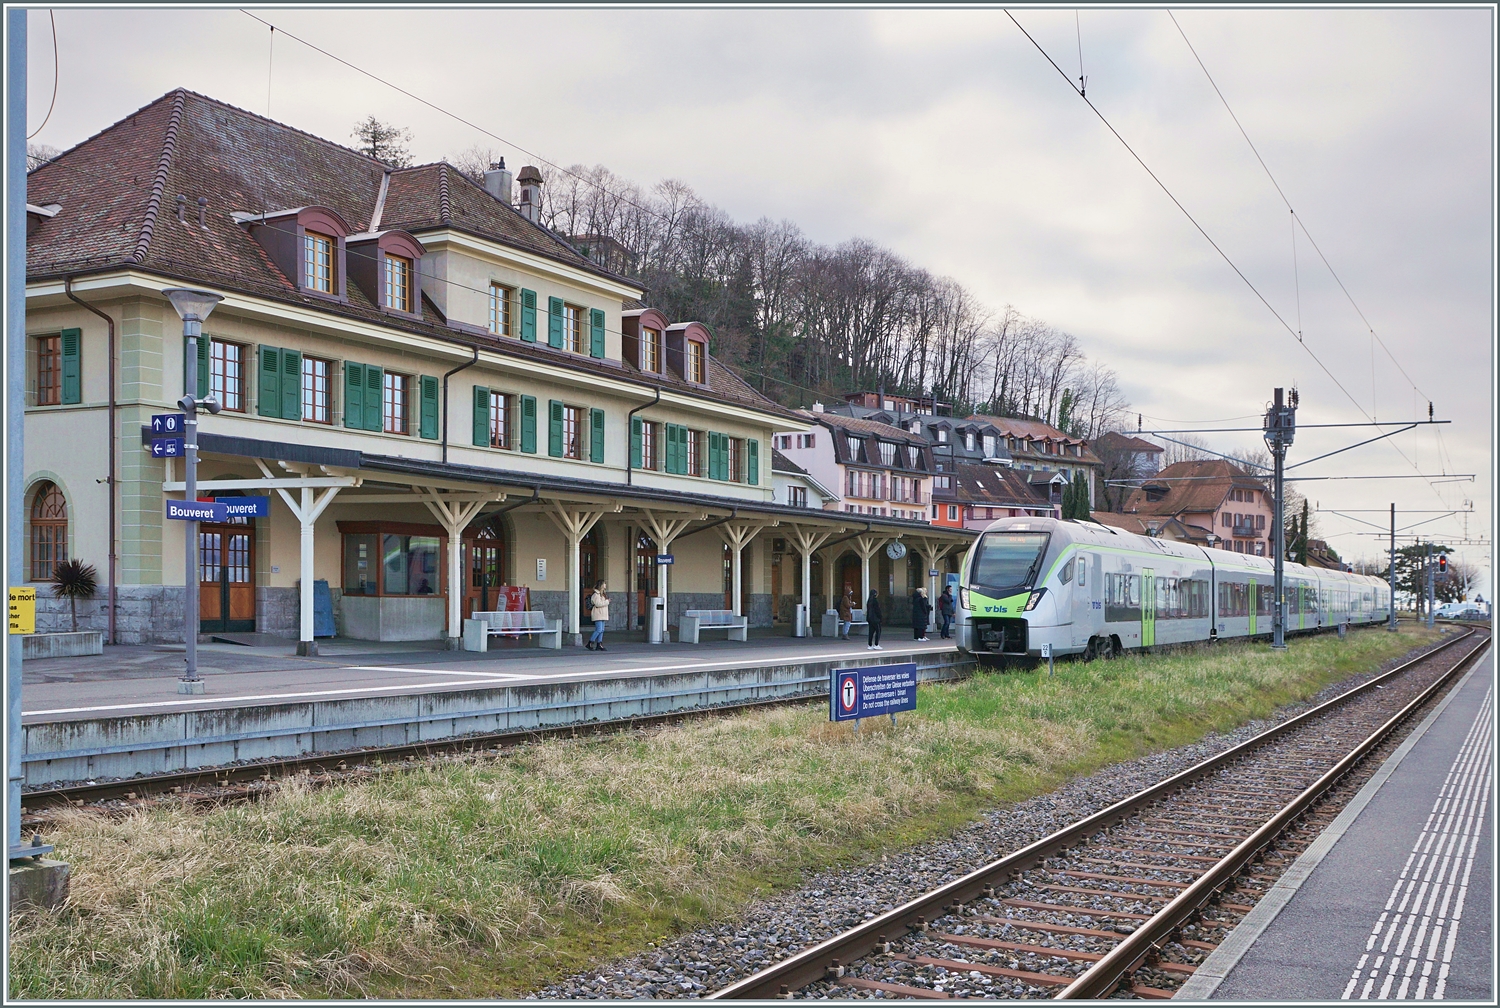 Nachdem der BLS RABe 528 109 einige Zeit in St-Gingolph gestanden hat, nimmt er die lange Fahrt als R 91 6125 nach Brig in Angriff und erreicht Bouveret, den ehemaligen Grenzbahnhof und östlichste Station am Genfer See. 

4. März 2024